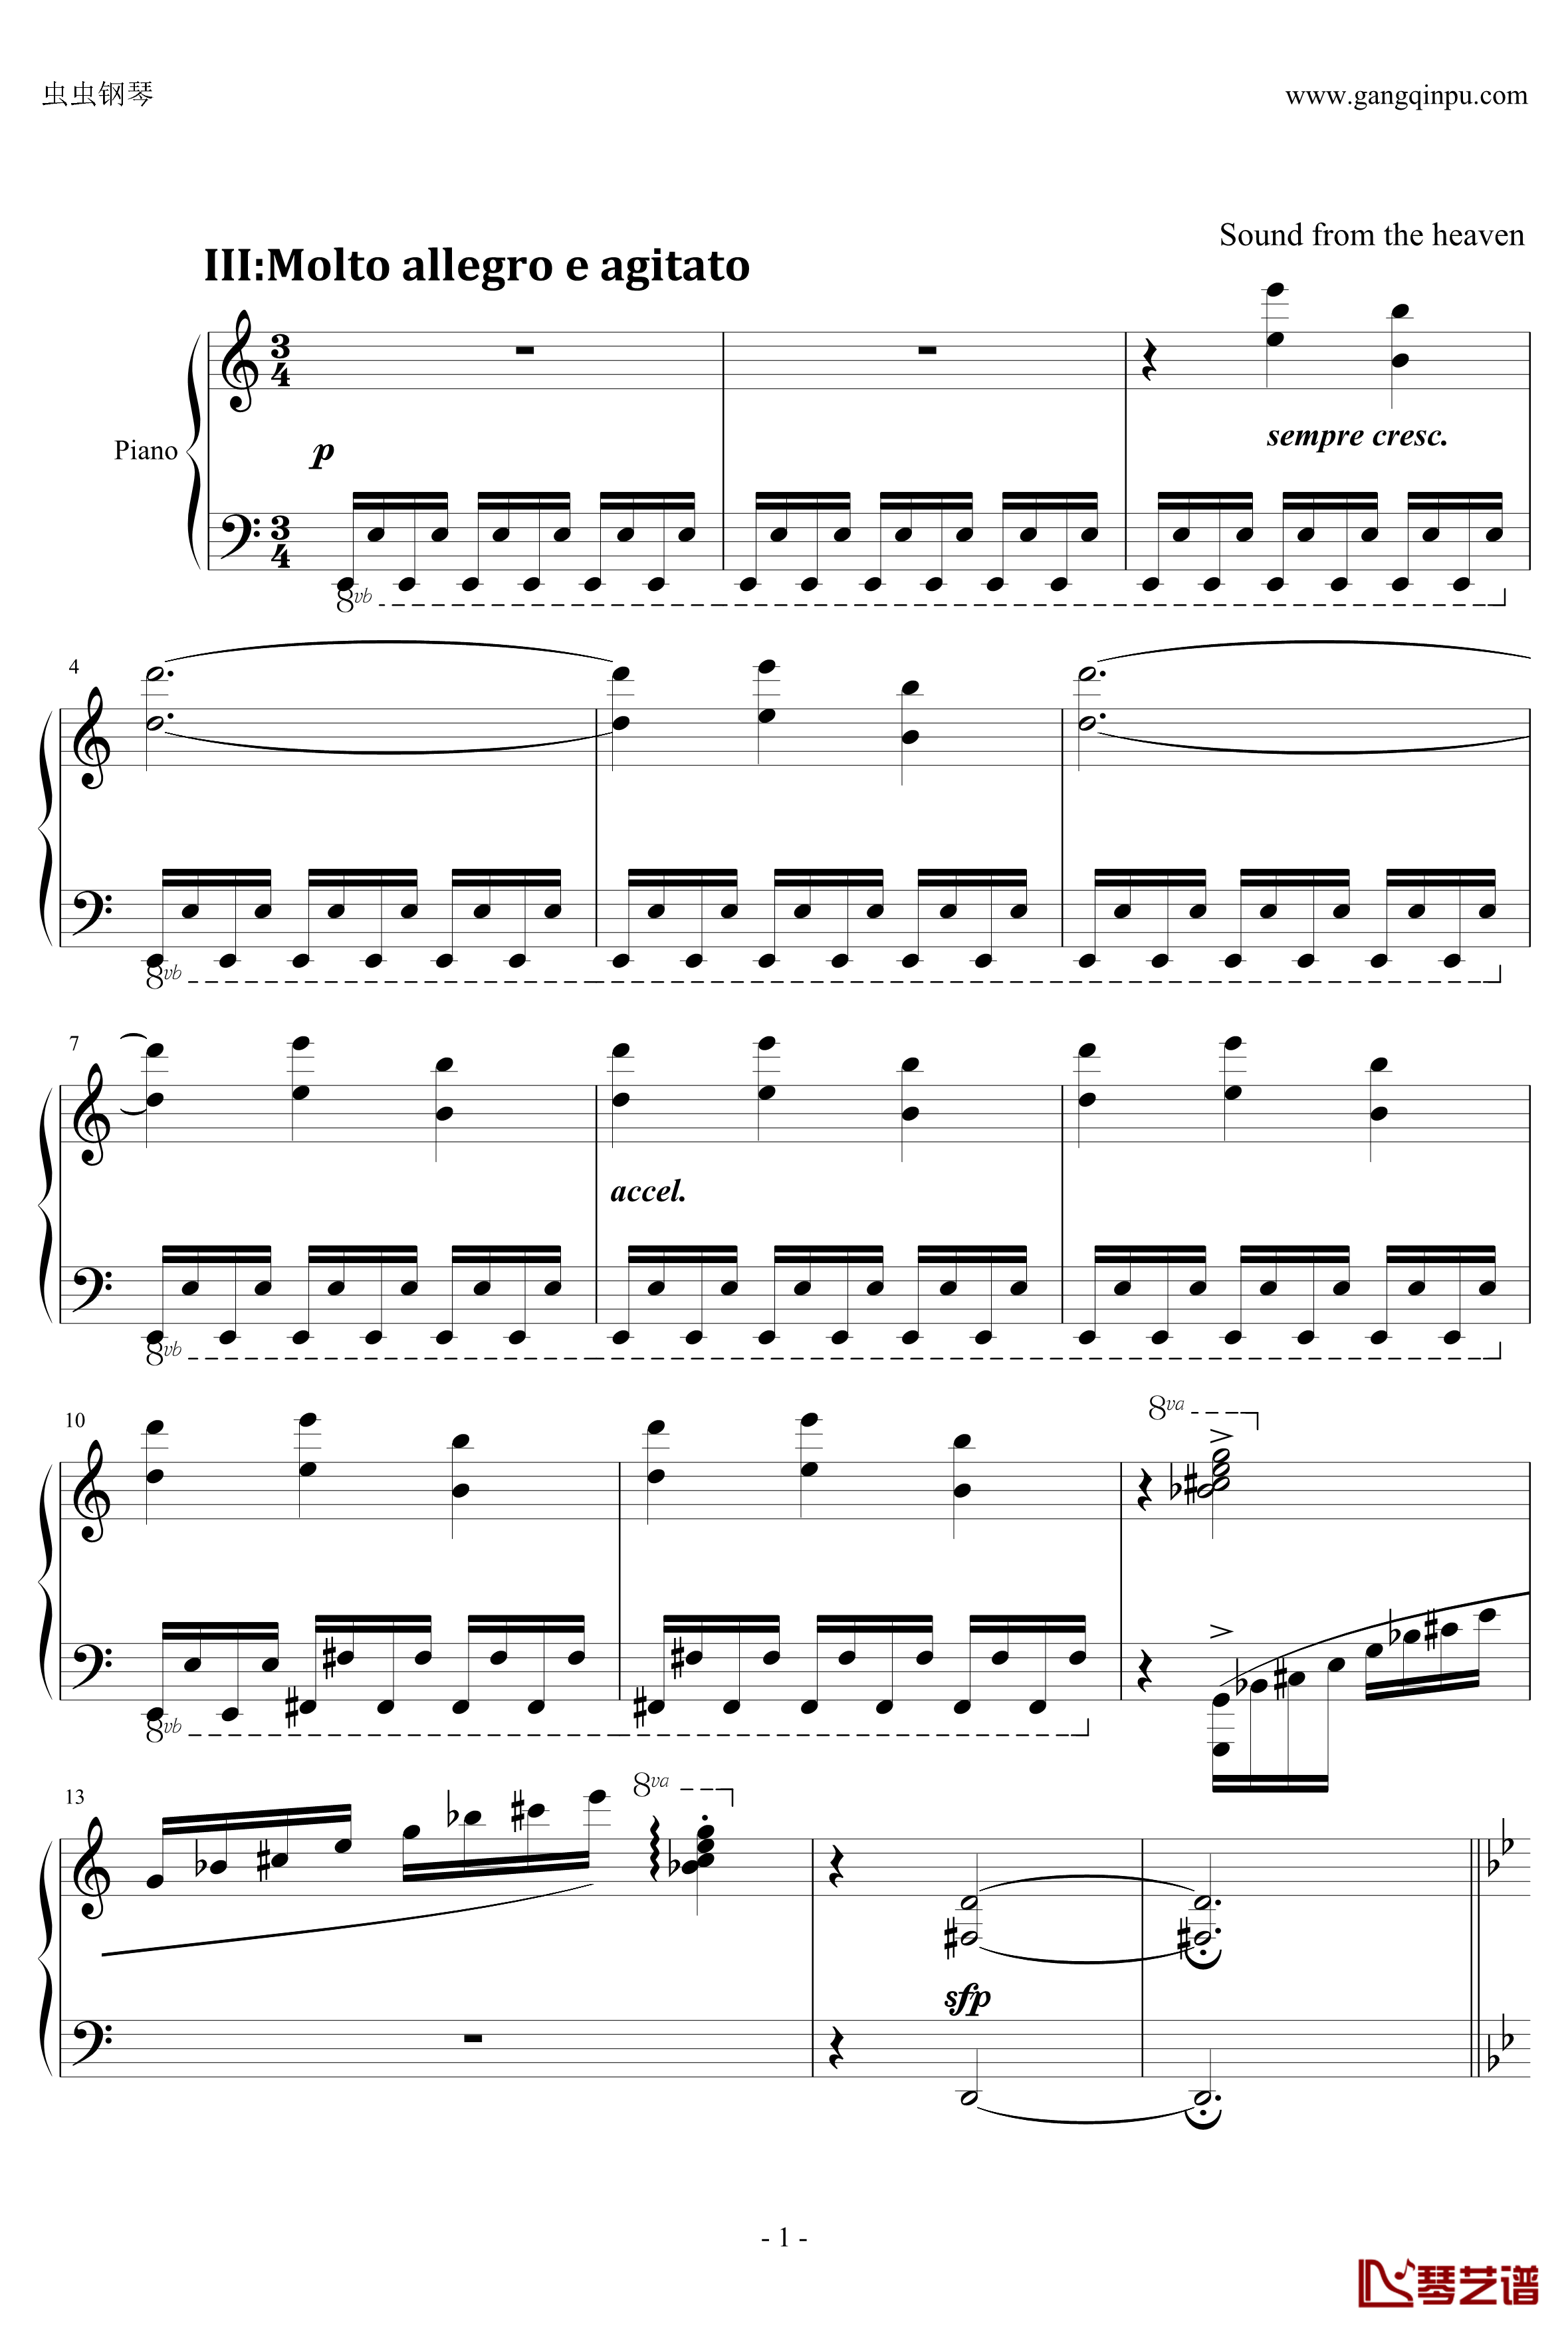 C大调小奏鸣曲钢琴谱 第三乐章-天籁传声1